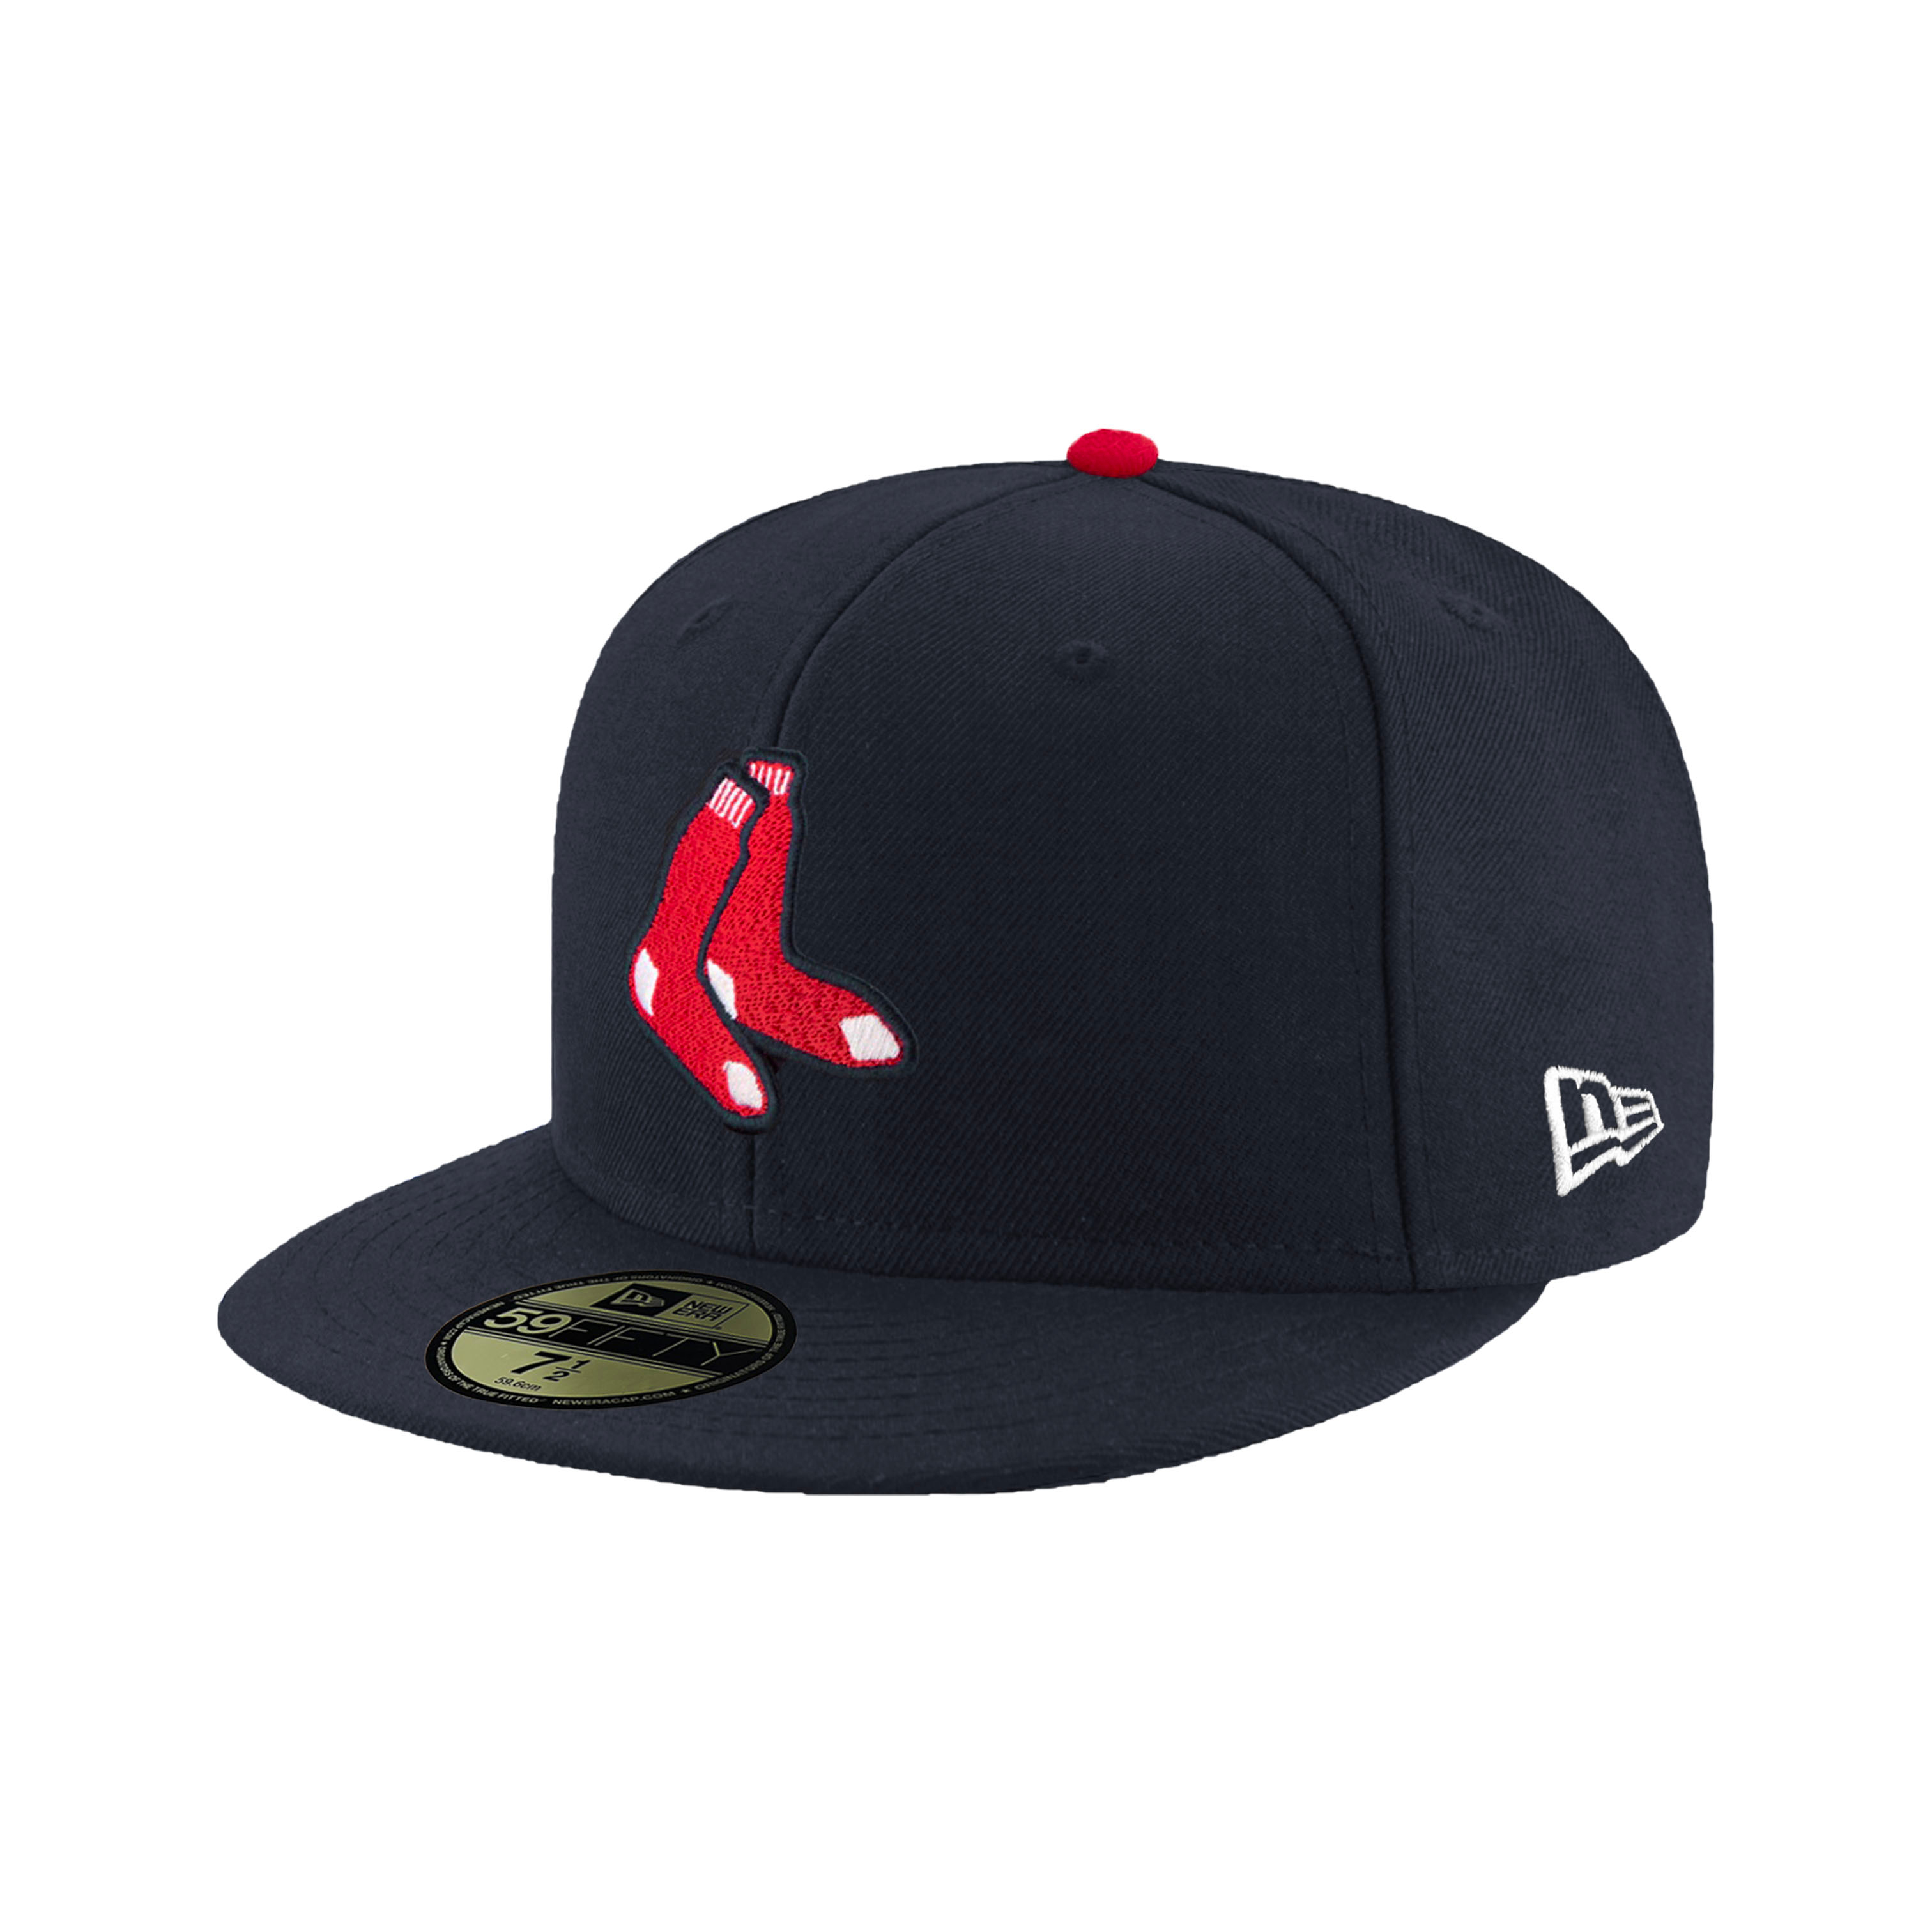 NEW ERA 59FIFTY 5950 MLB 球員帽 紅襪 海軍藍/紅 棒球帽 鴨舌帽【TCC】